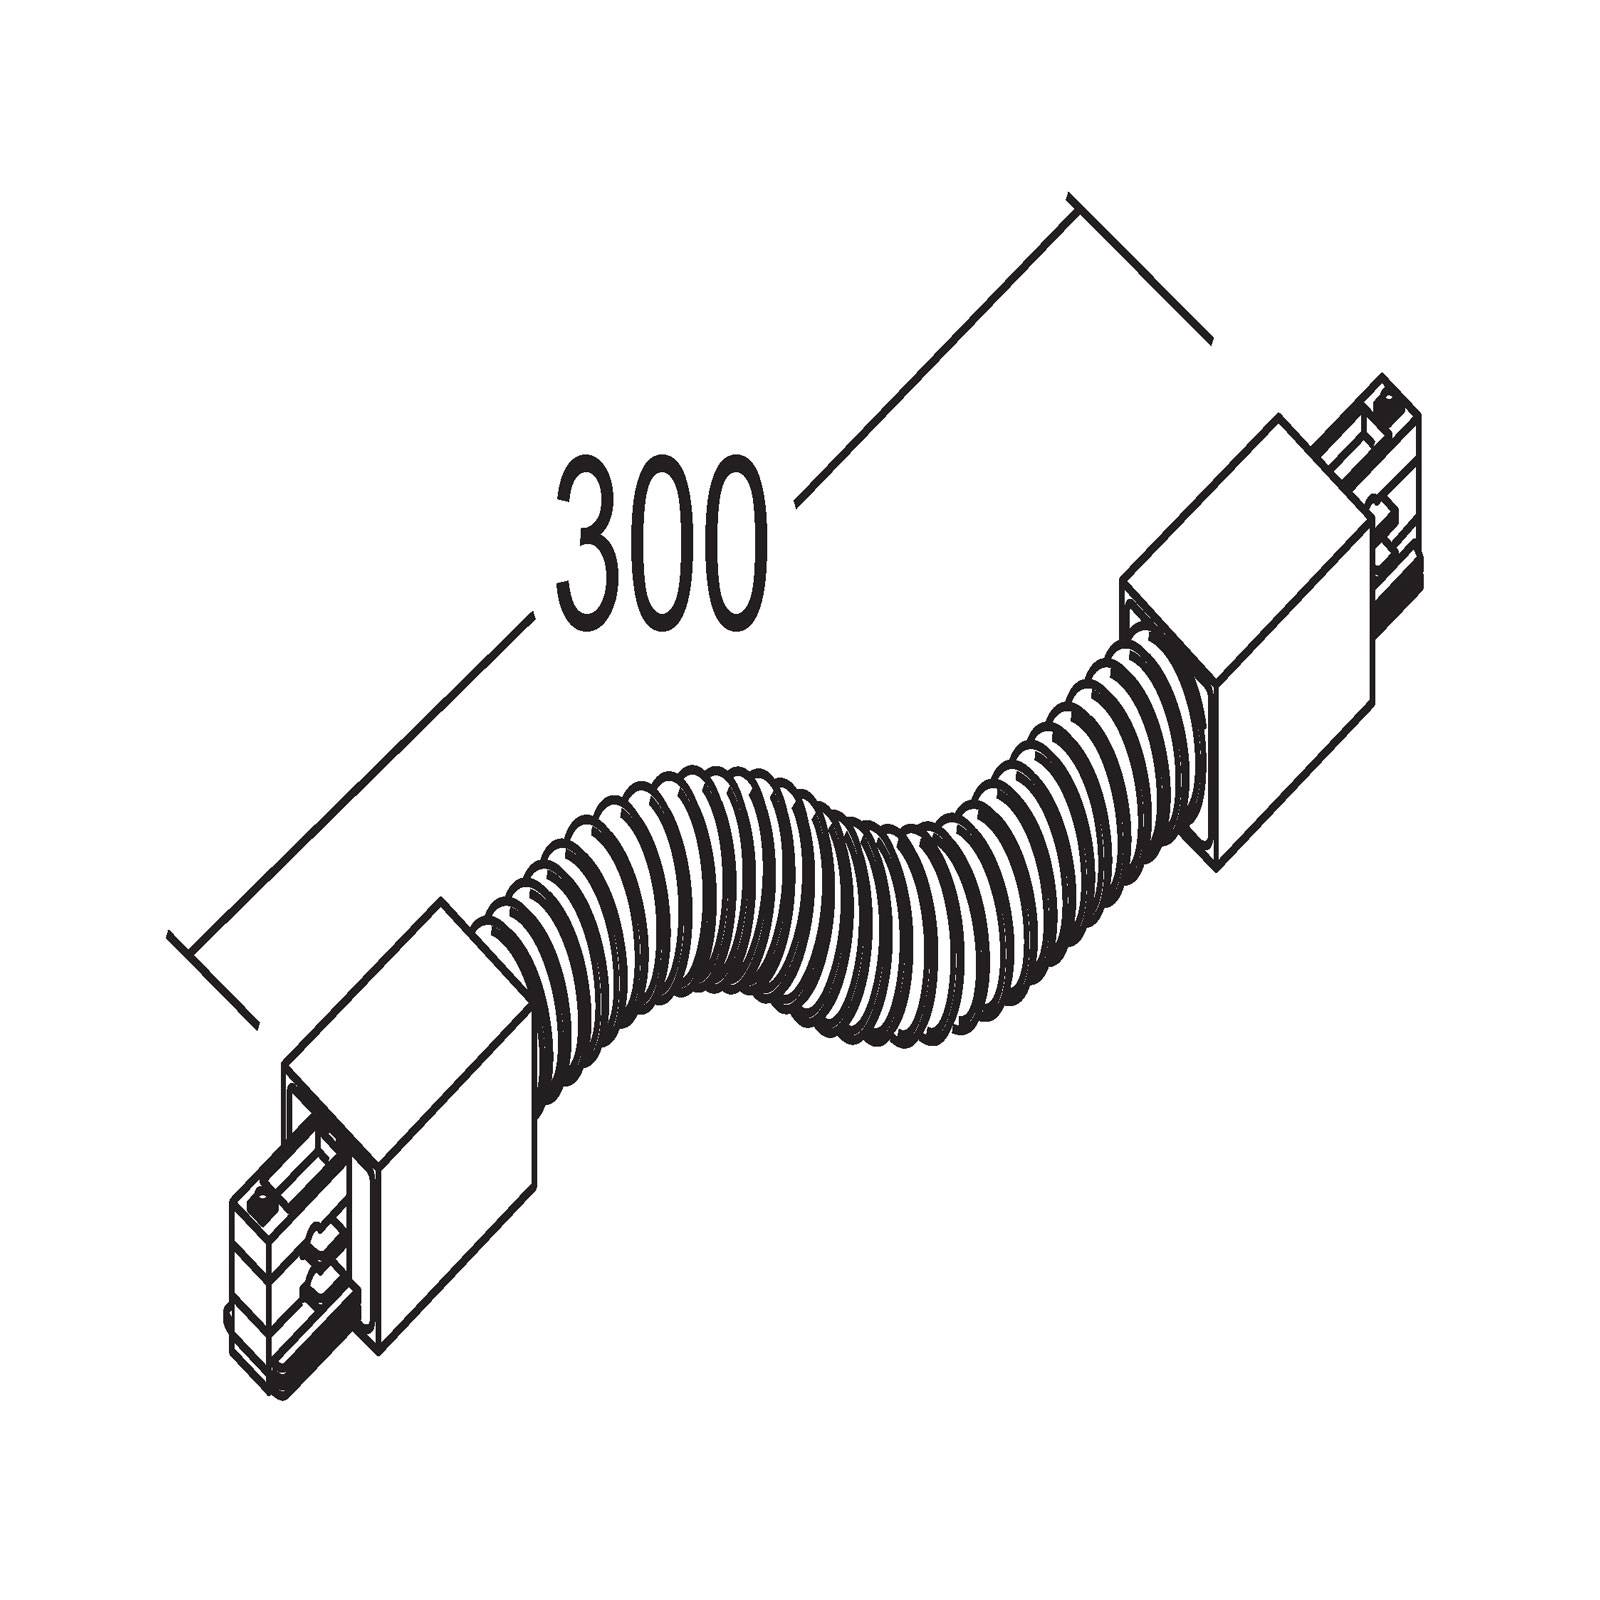 Ivela connecteur flex système triphasé LKM, blanc